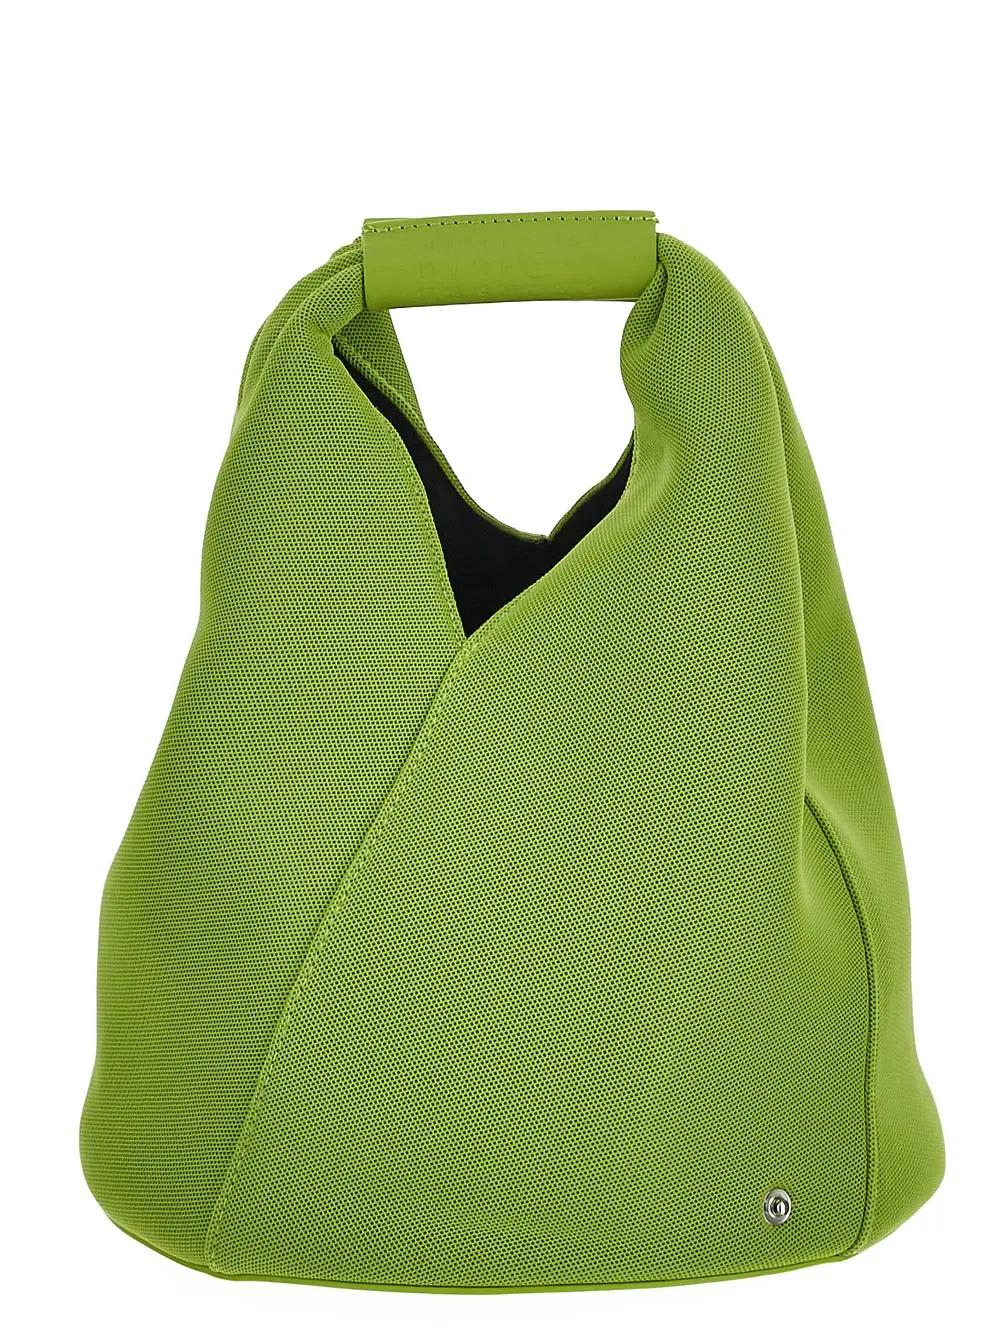 Mm6 Maison Margiela Japanese Bucket Handbag In Lime Green